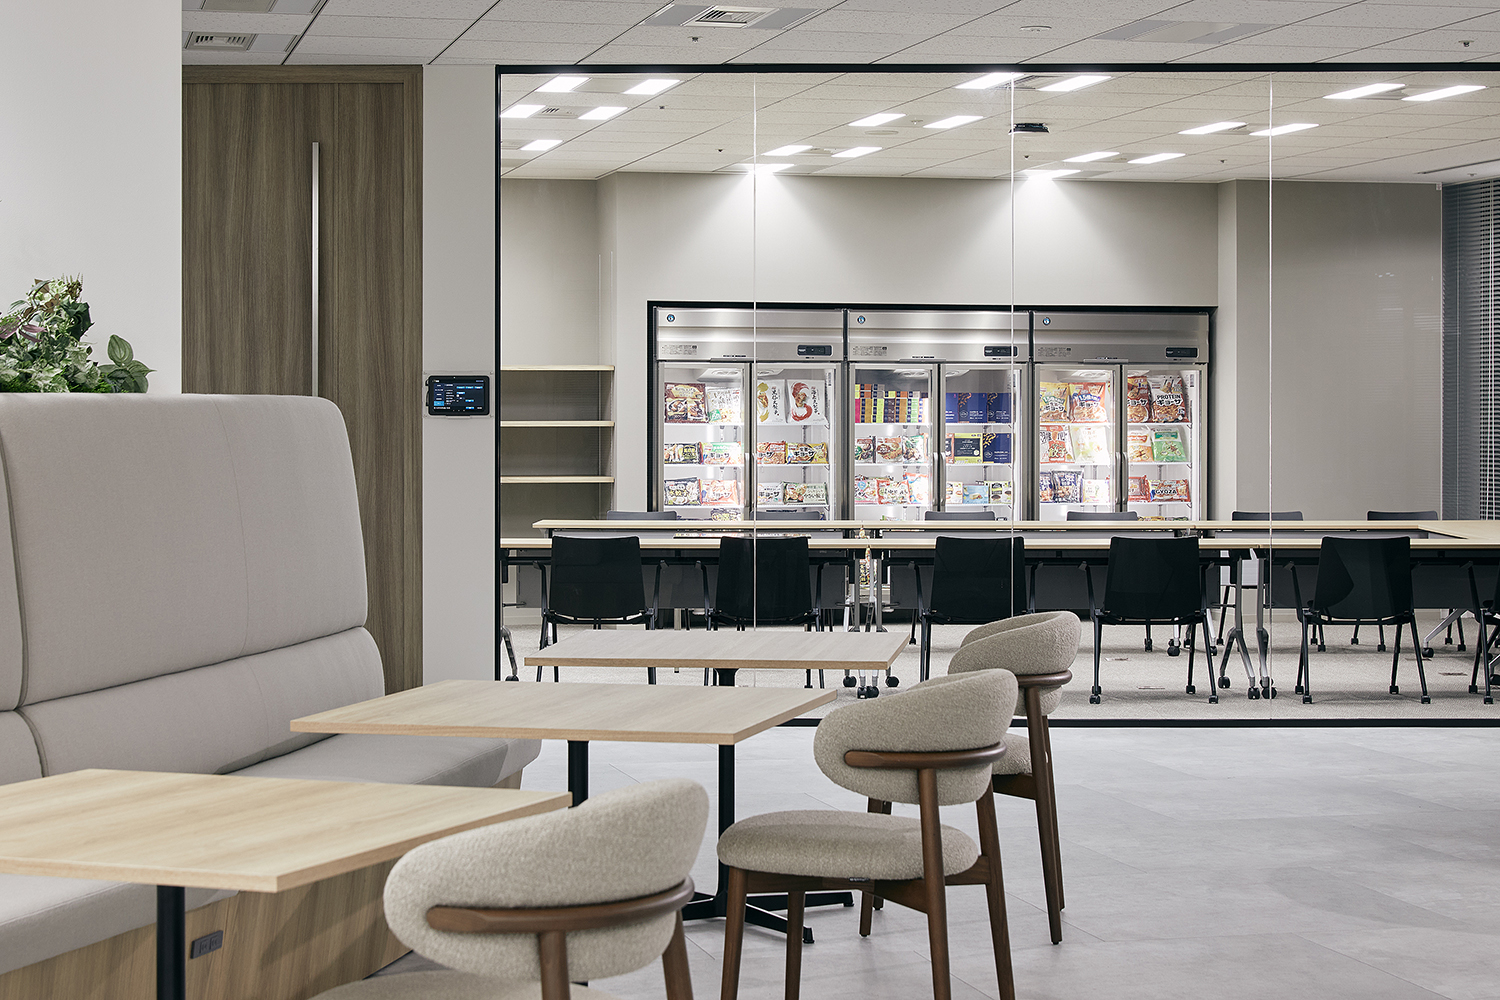 味の素冷凍食品株式会社 Meeting Room デザイン・レイアウト事例